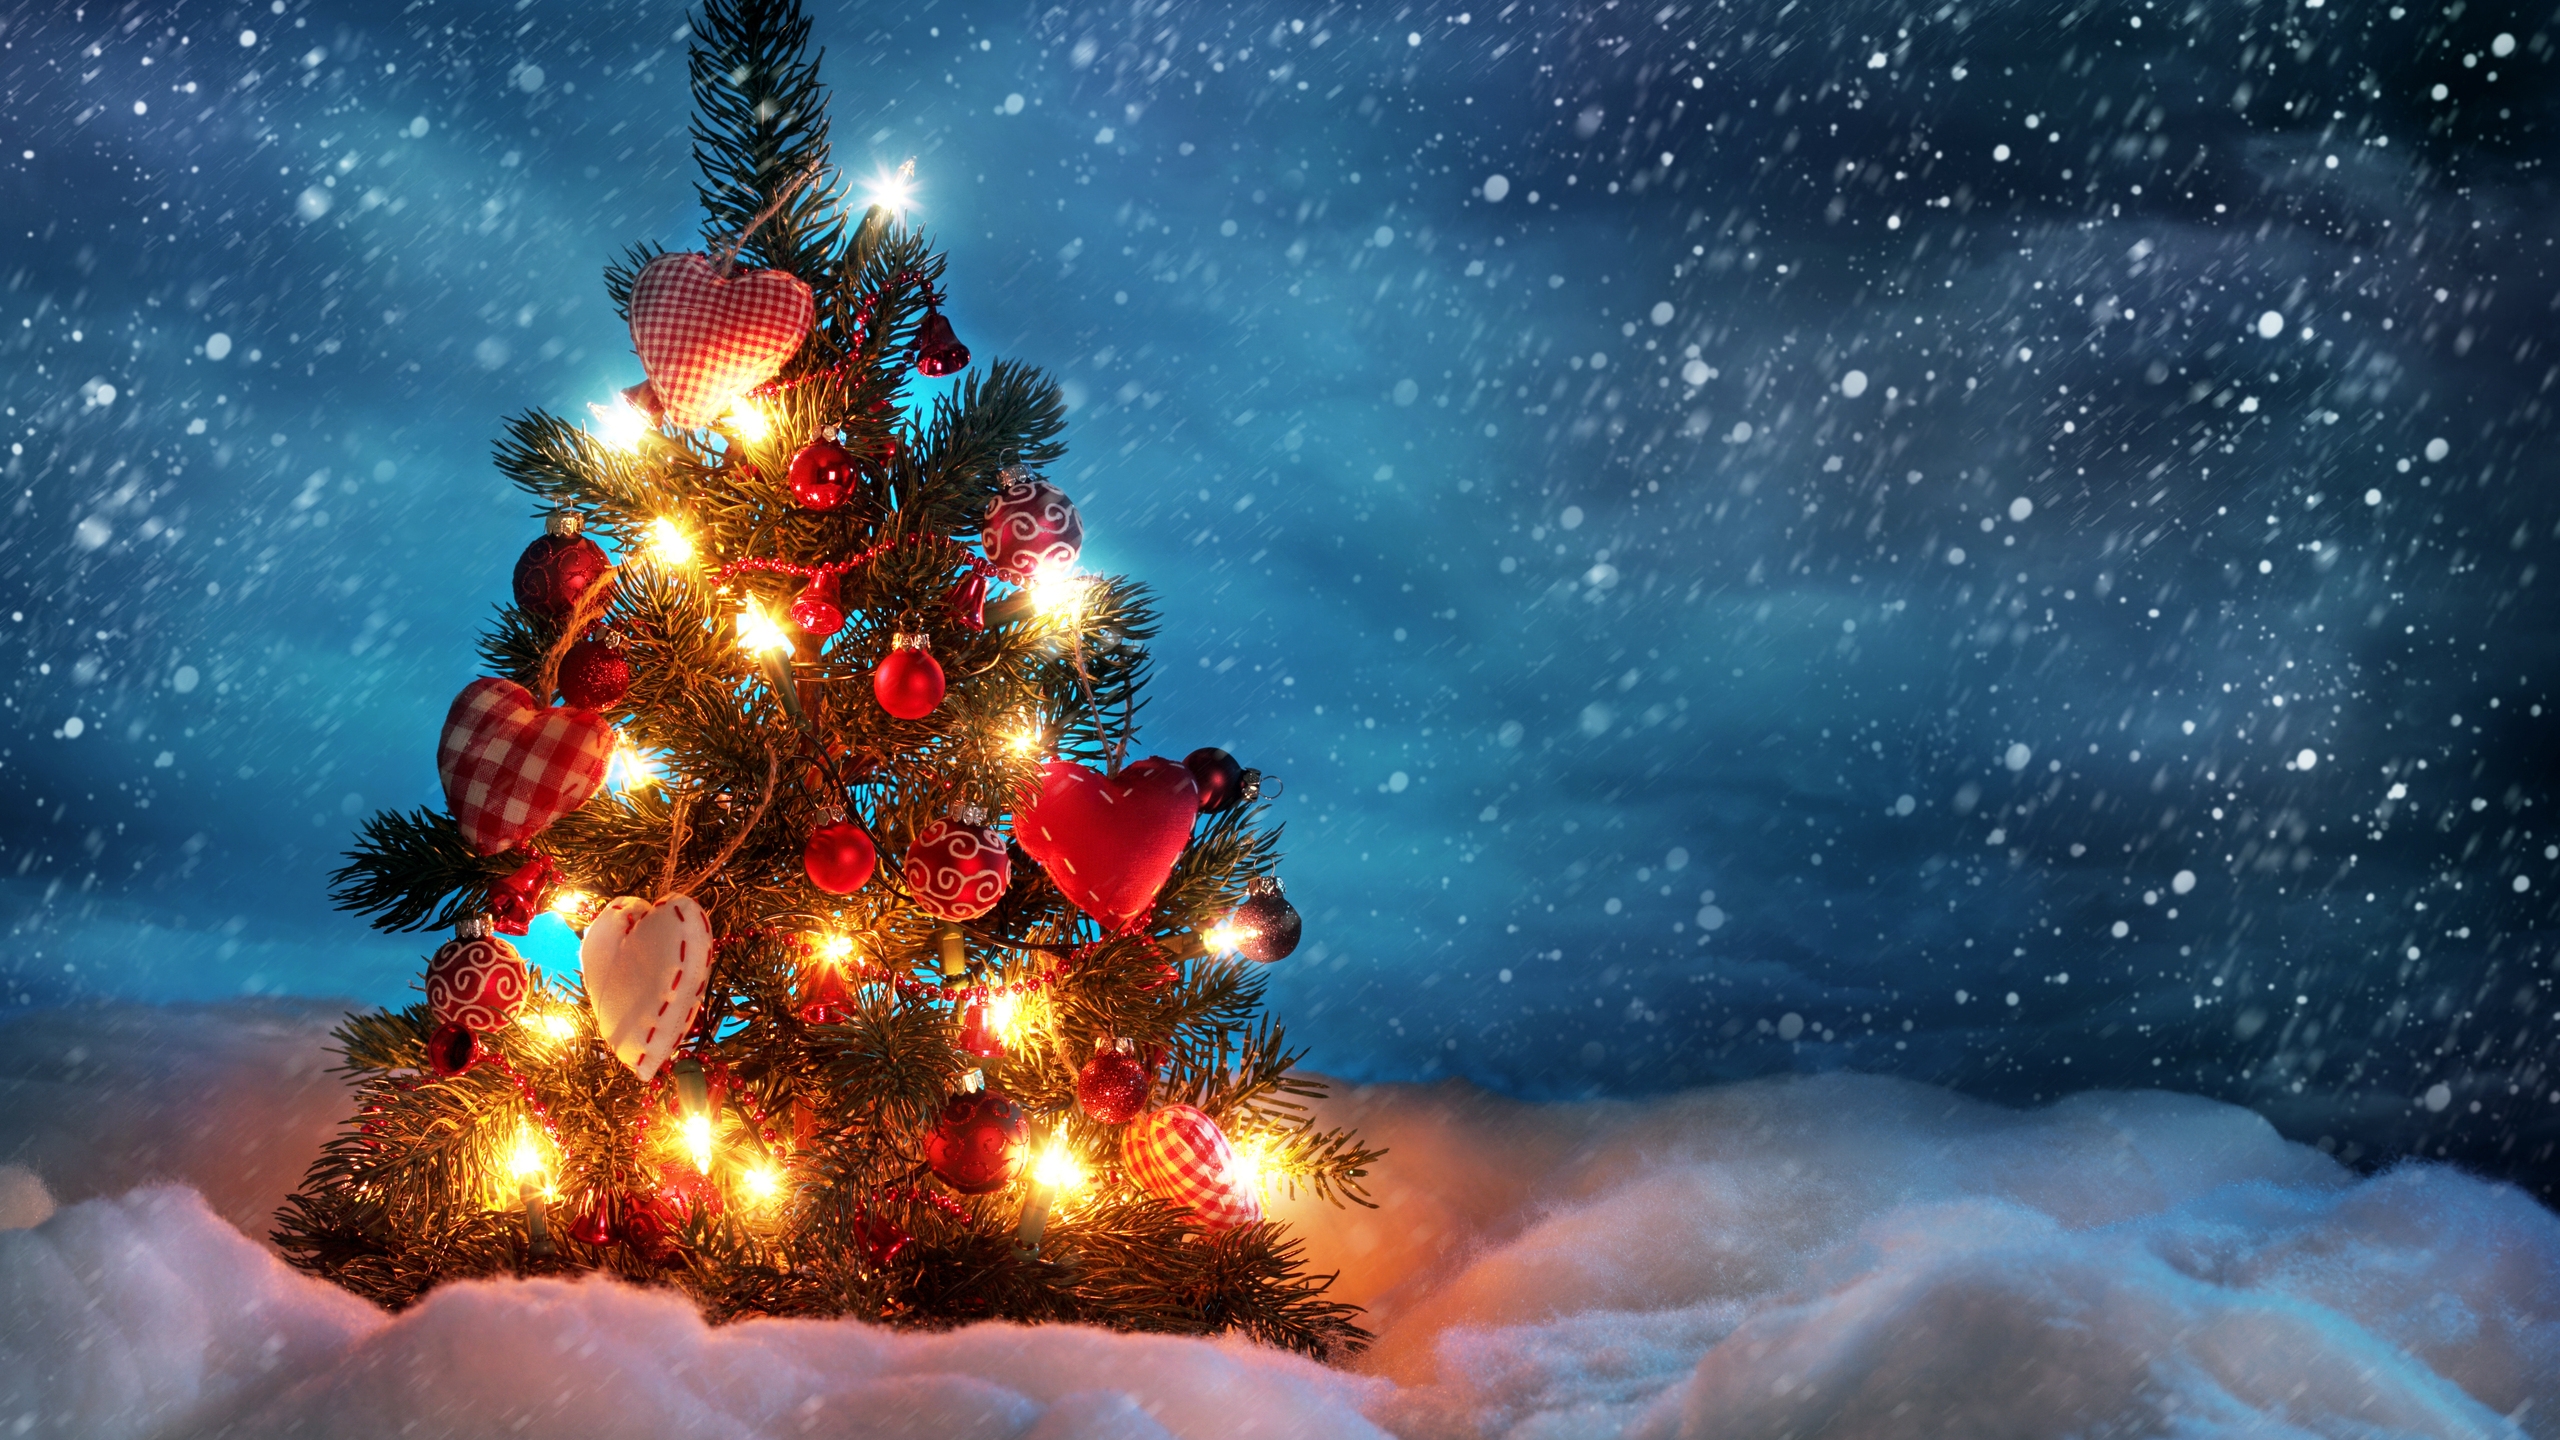 Lovely Christmas Tree for 2560x1440 HDTV resolution